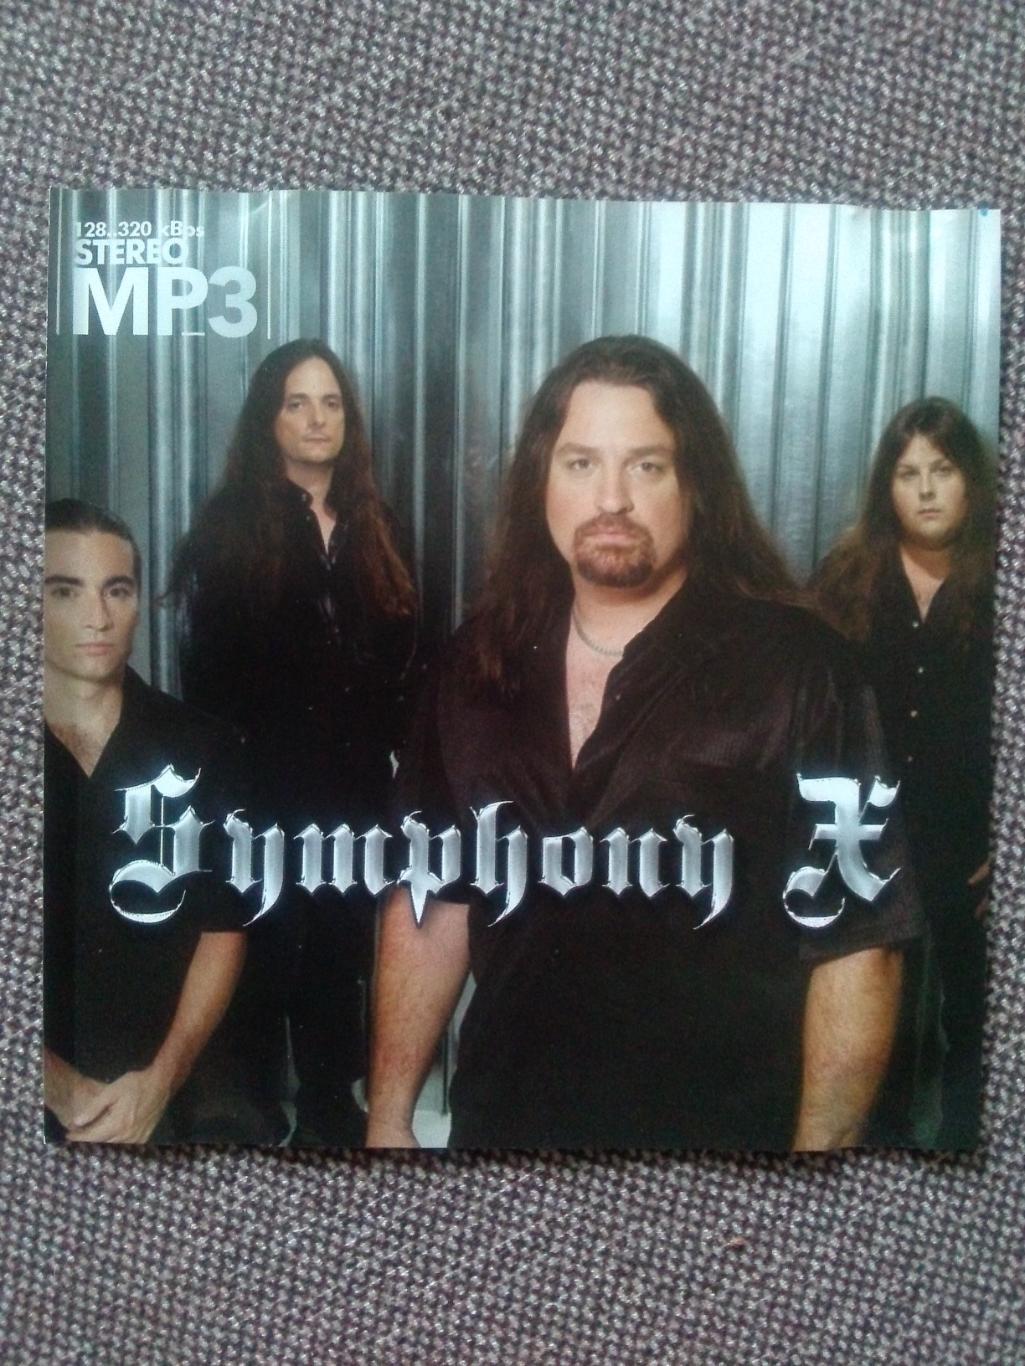 MP - 3 CD диск : группаSymphony X1995 - 2008 гг. 8 альбомов Рок - музыка